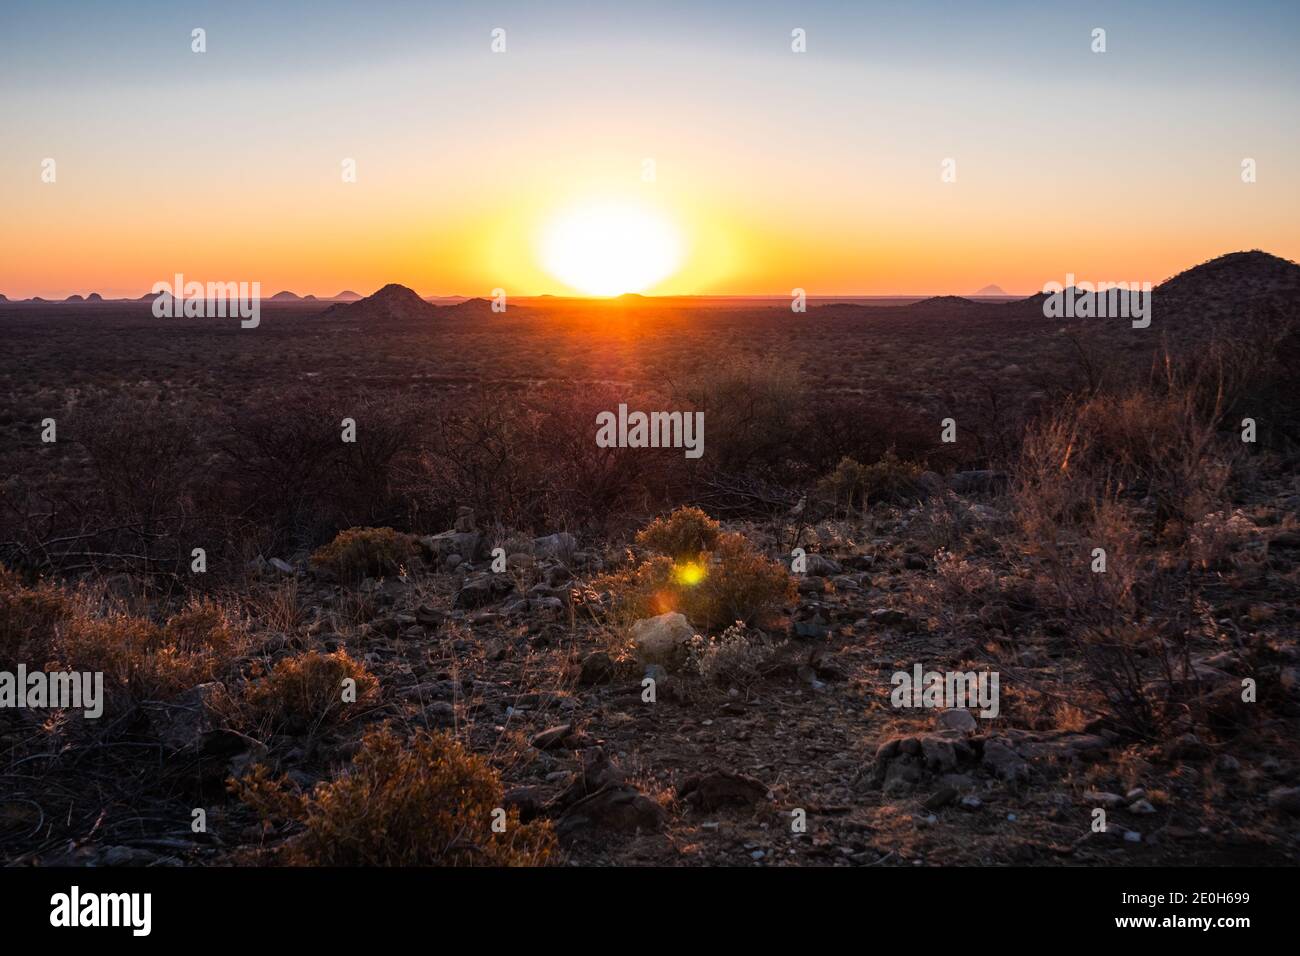 Puesta de sol en la sabana en Omaruru, en la región de Erongo, en la meseta central de Namibia, África, puesta de sol escénica en la naturaleza africana Foto de stock